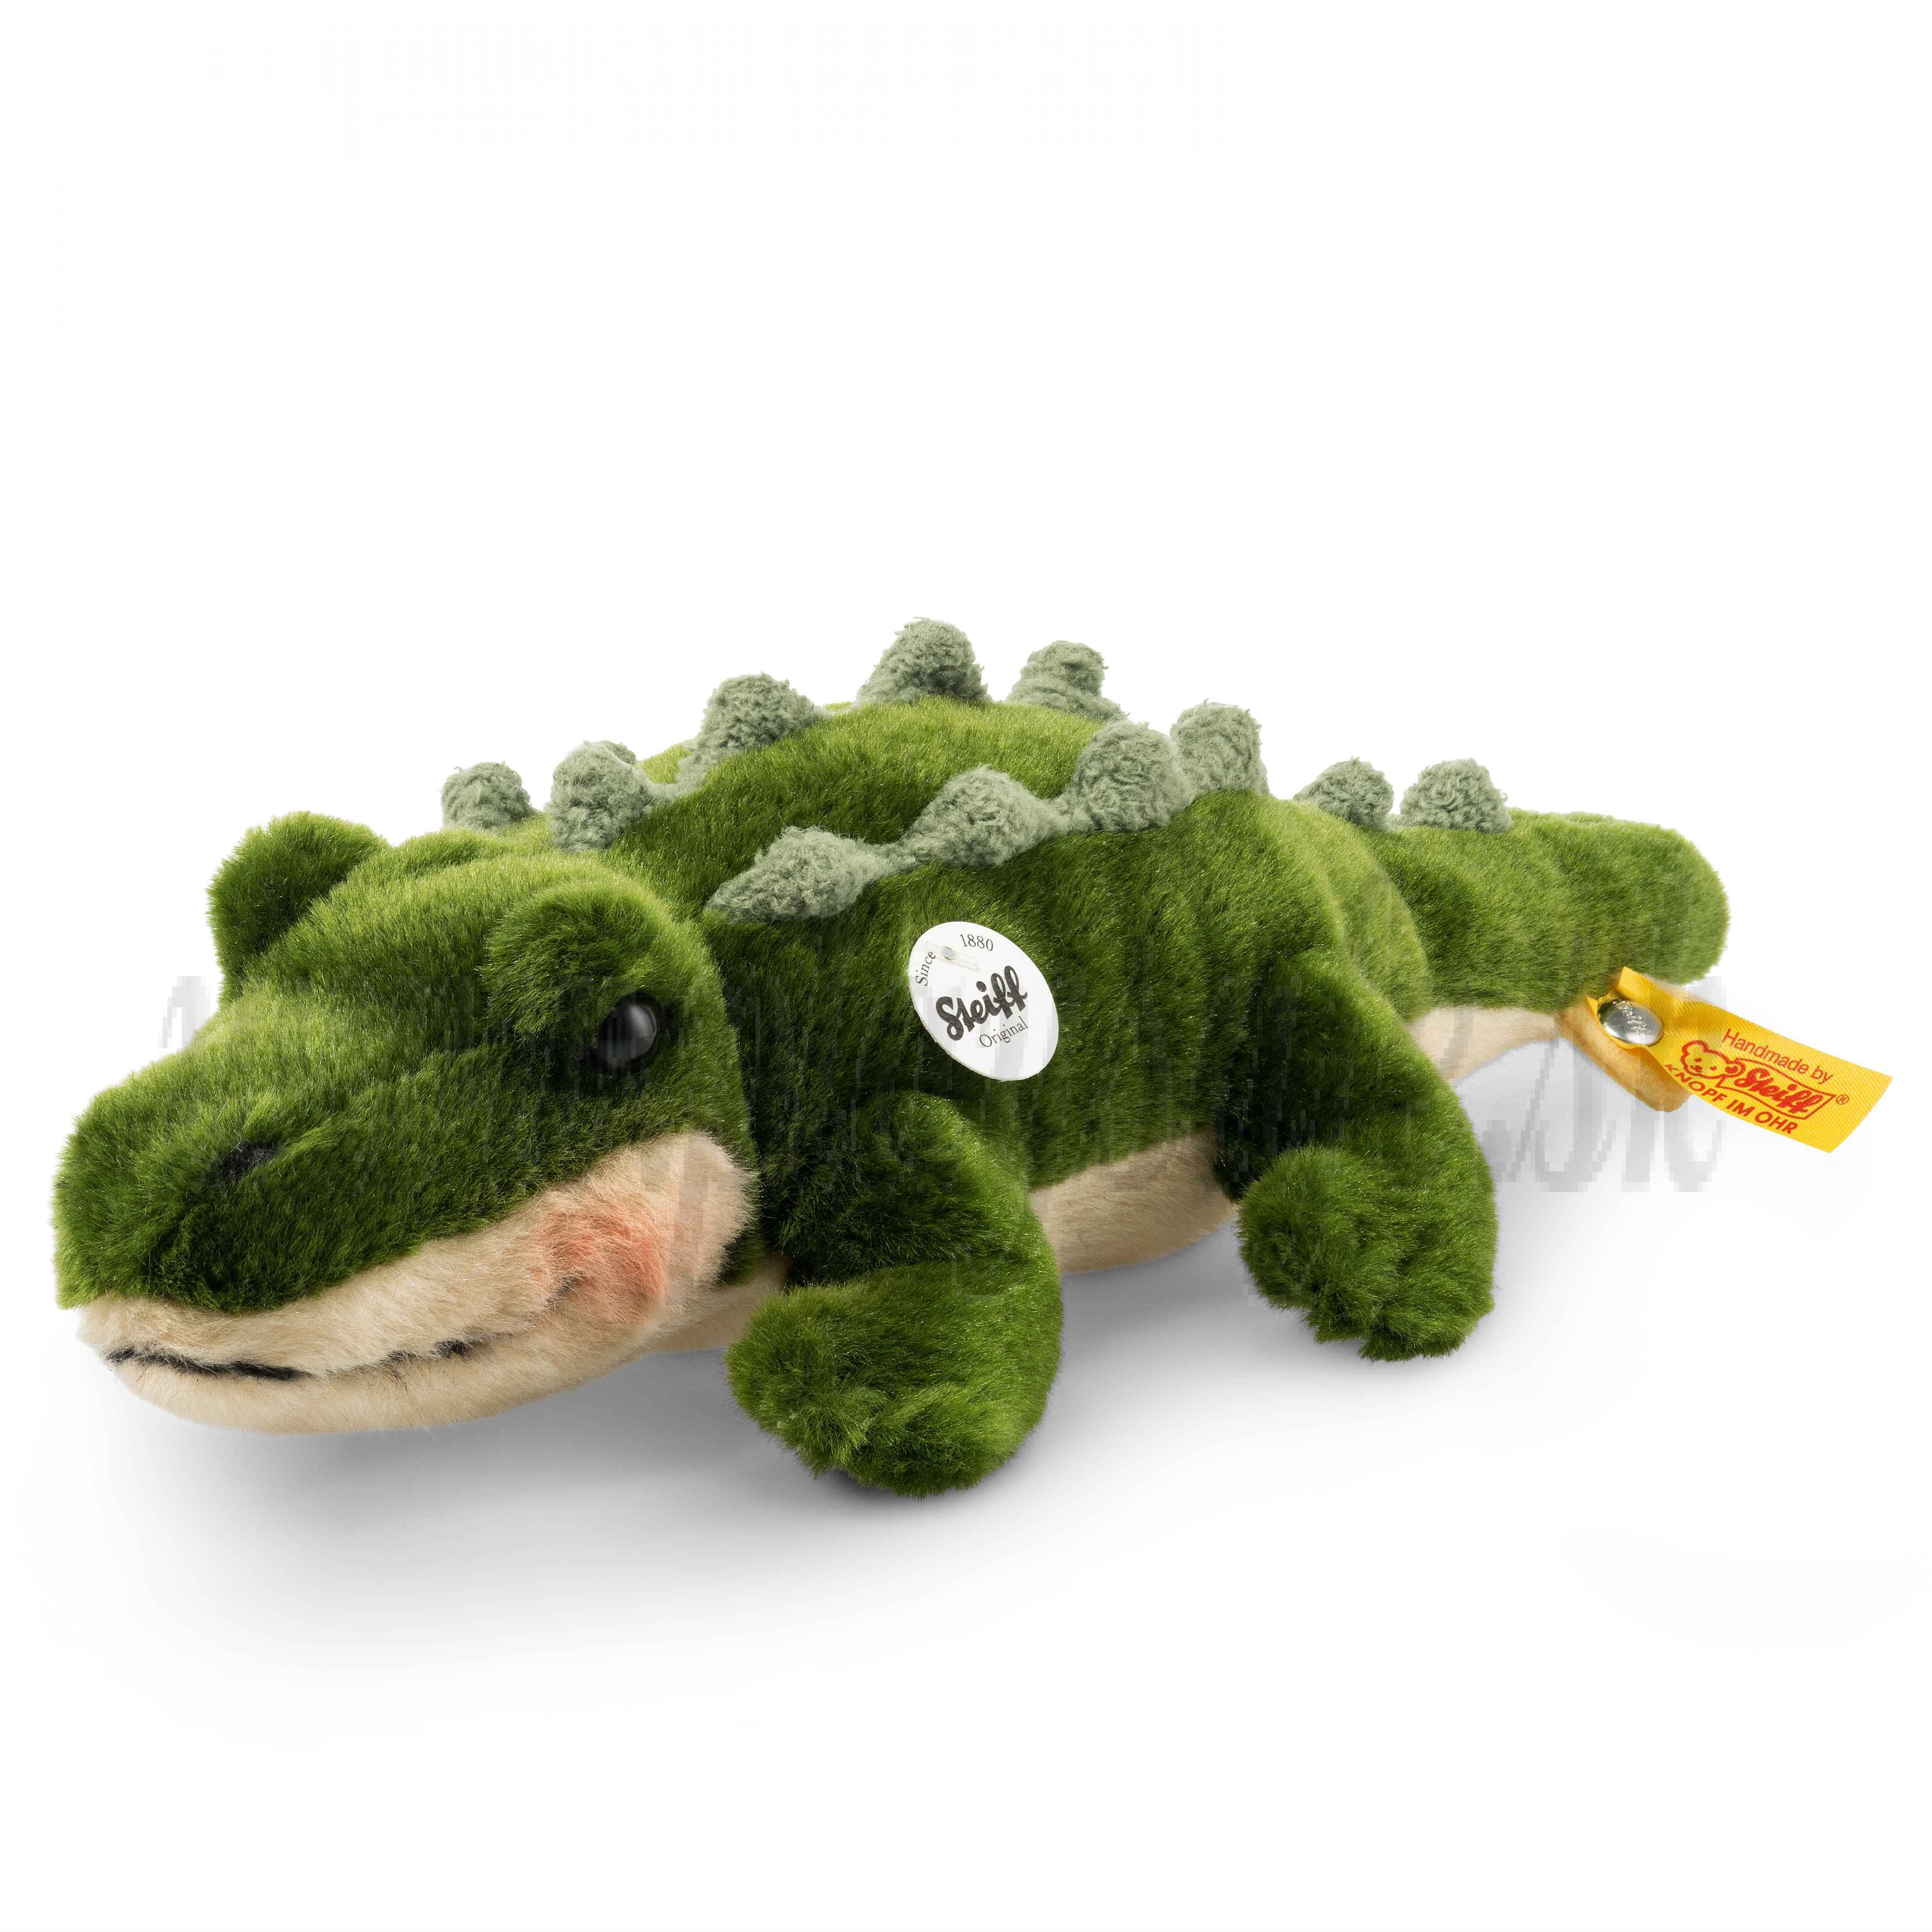 Steiff Soft toy Crocodile Rocko, 30cm